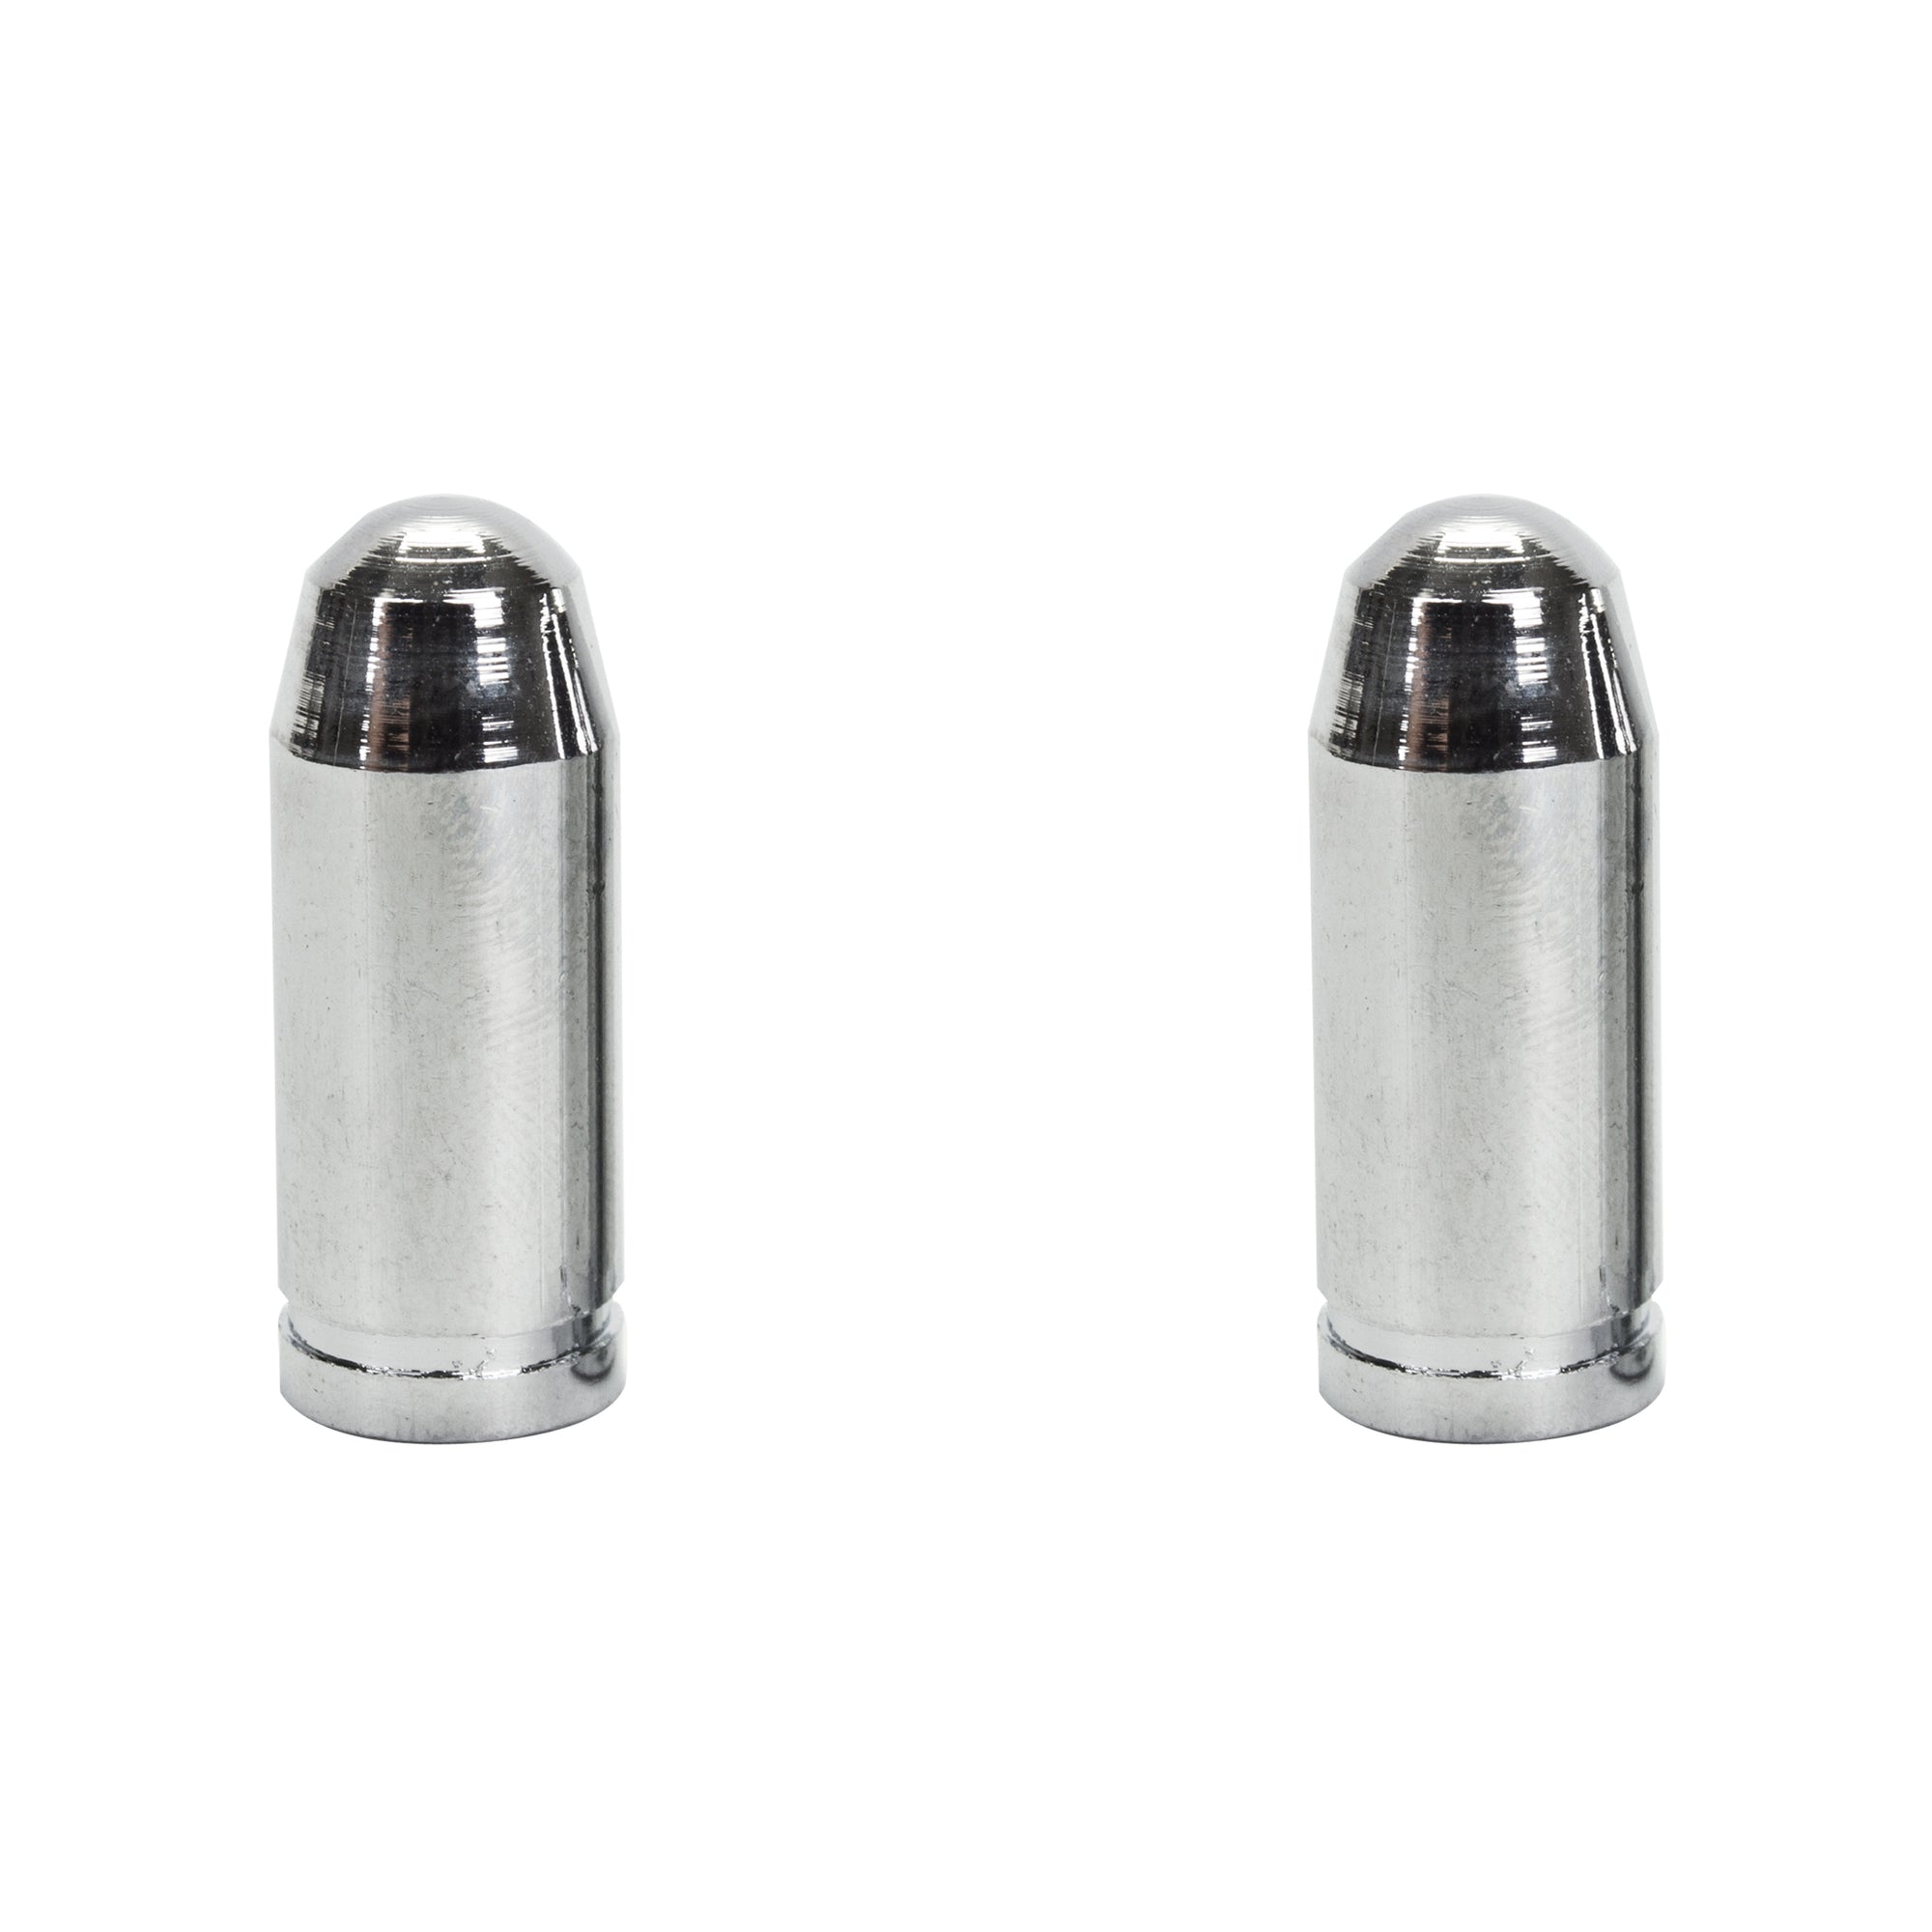 Trik Topz Bullet Tip Aluminum Valve Caps - Pair - Chrome